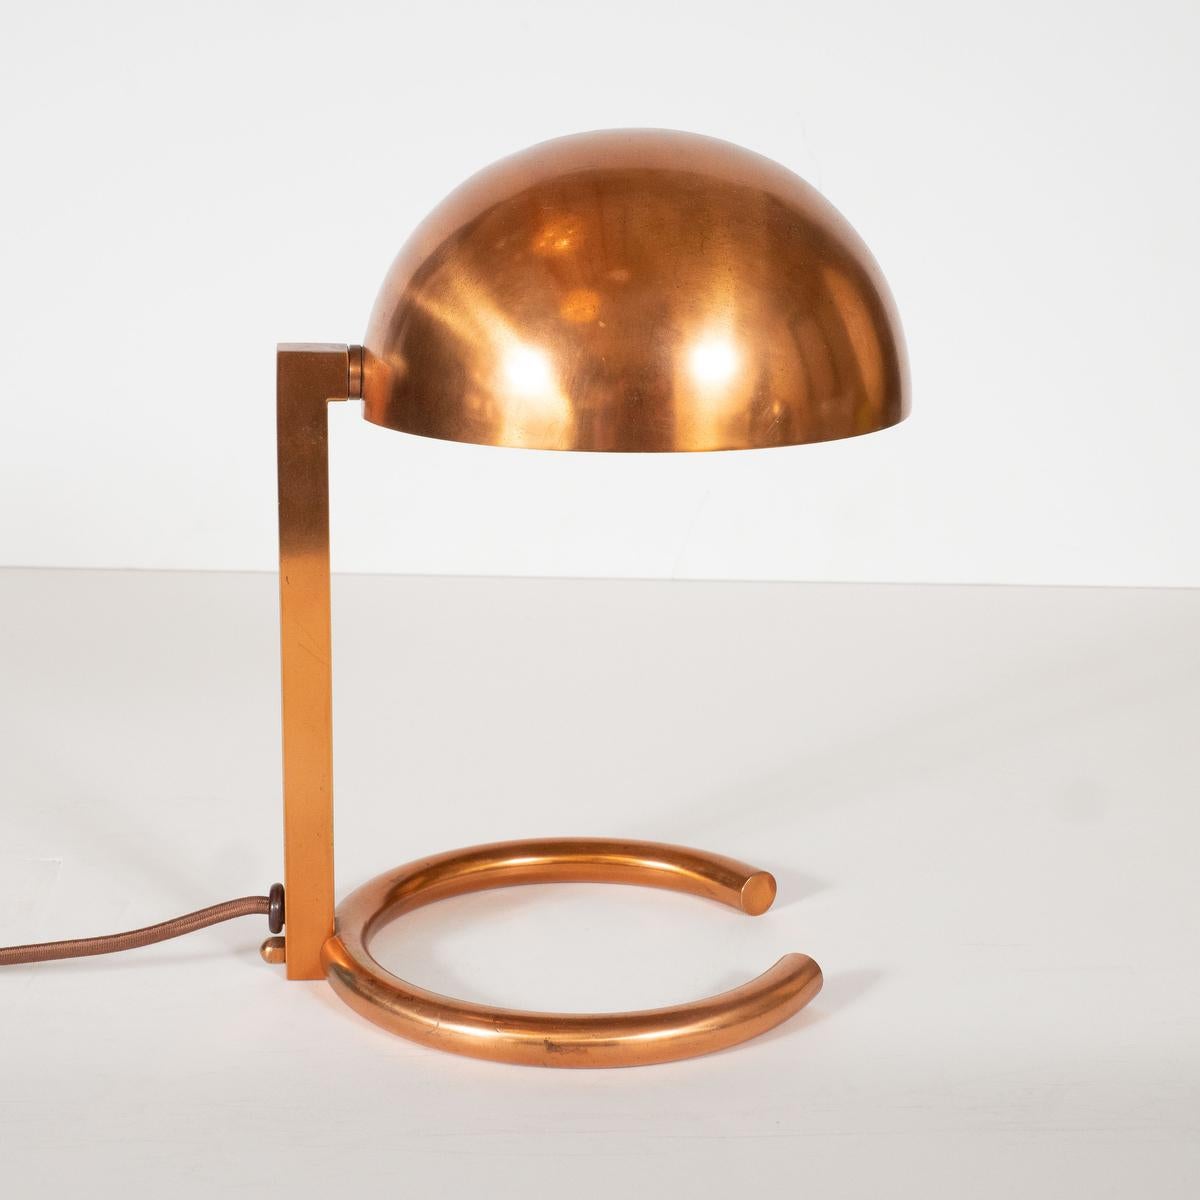 Seltene Schreibtischlampe aus Kupfer im modernistischen Stil mit verstellbarem Schirm von Adnet.